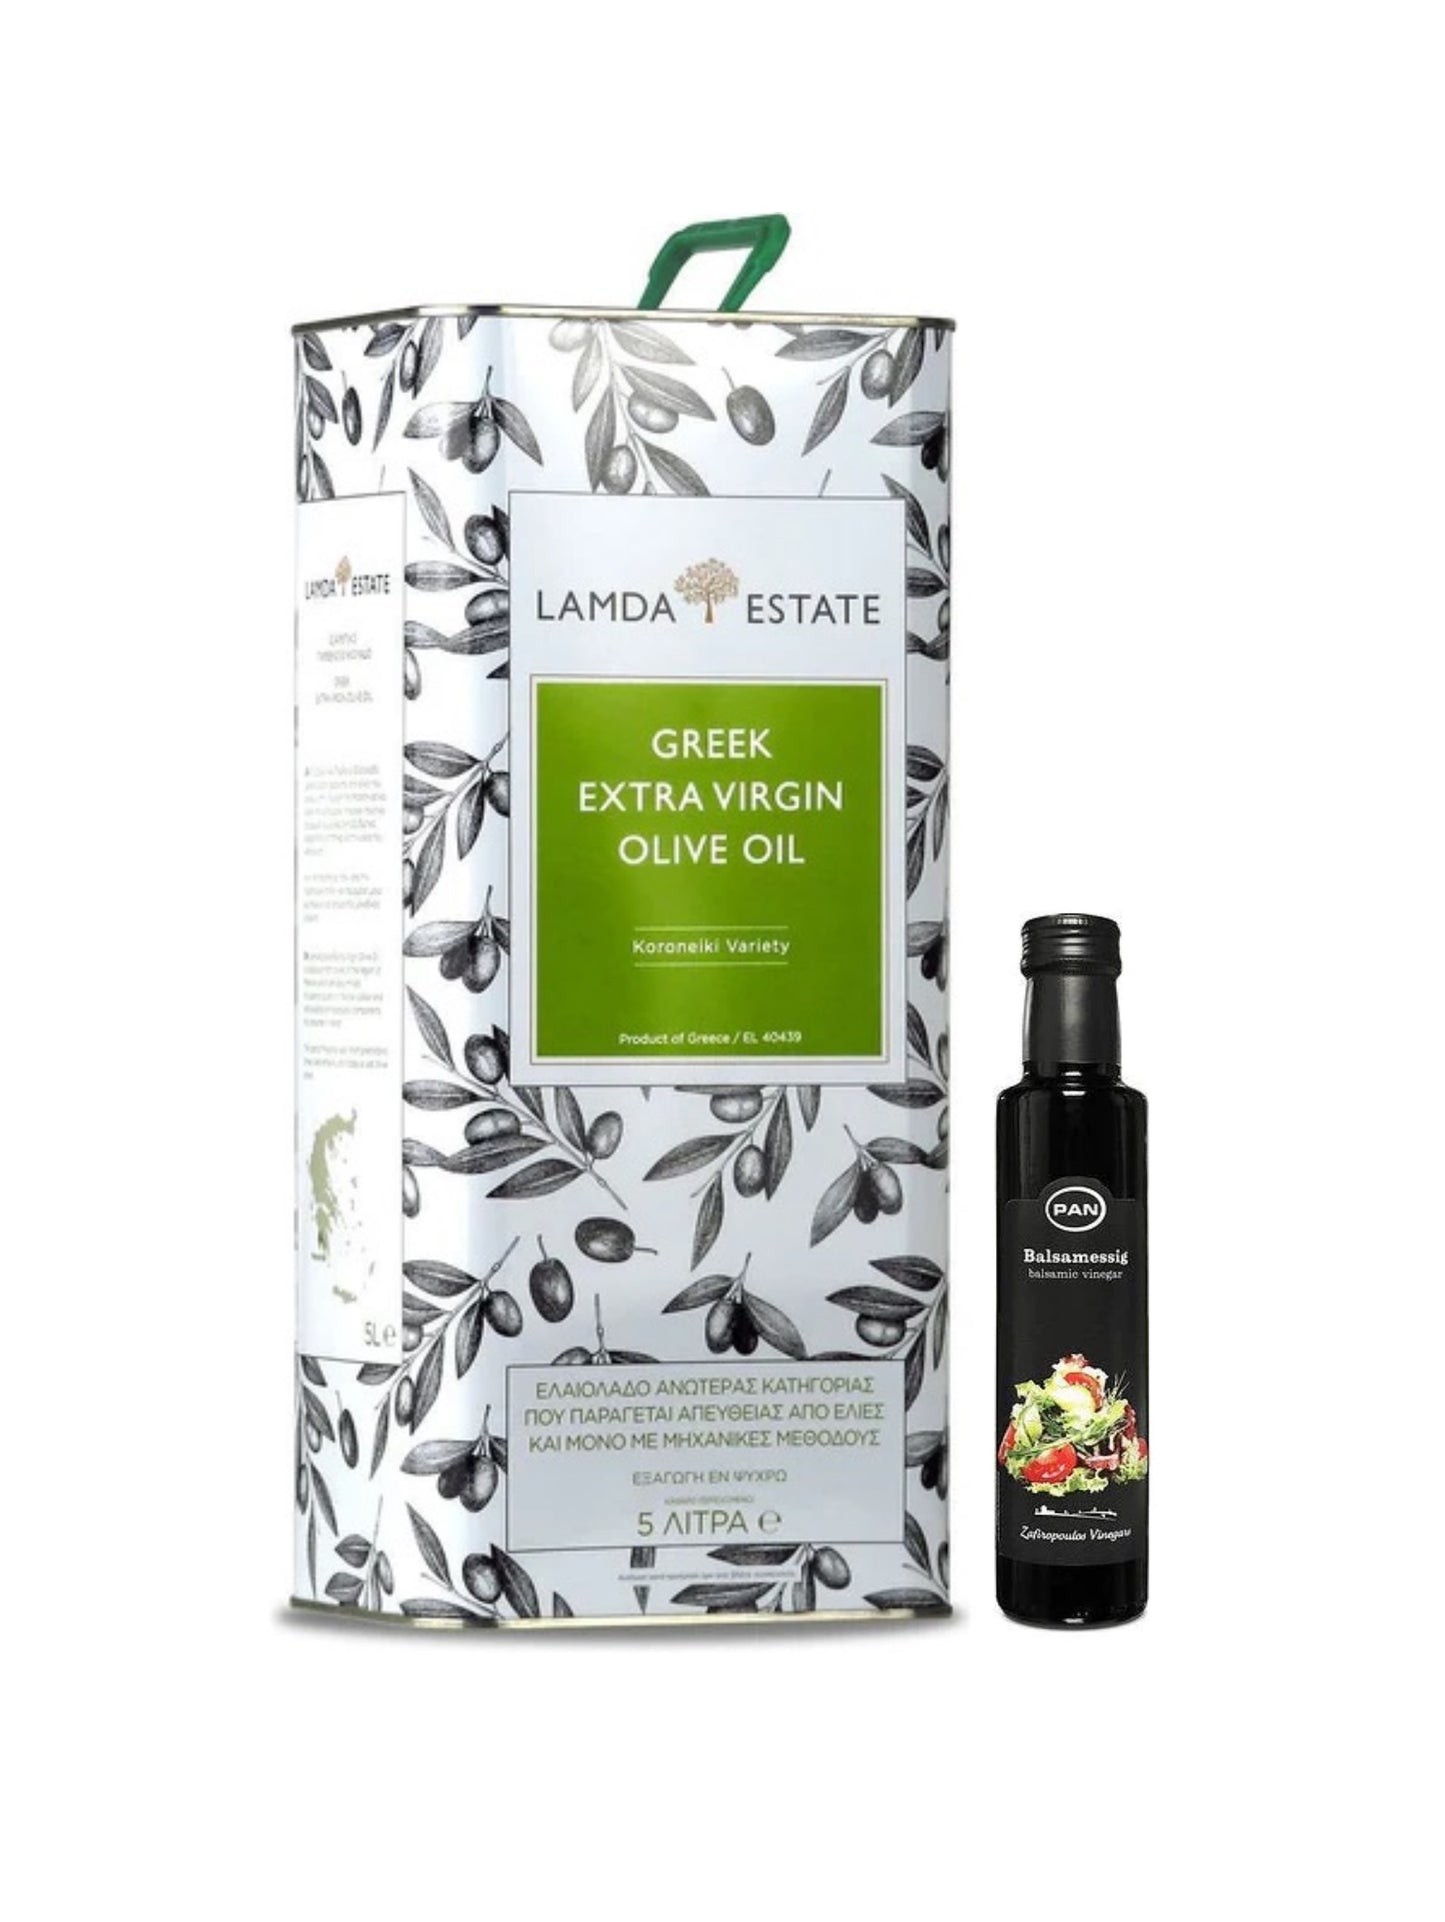 Lamda Estate griechisches extra natives Olivenöl 5 Liter + Balsamico - Limitierte Vorbestellung: Frisches Olivenöl in 3-4 Wochen geliefert